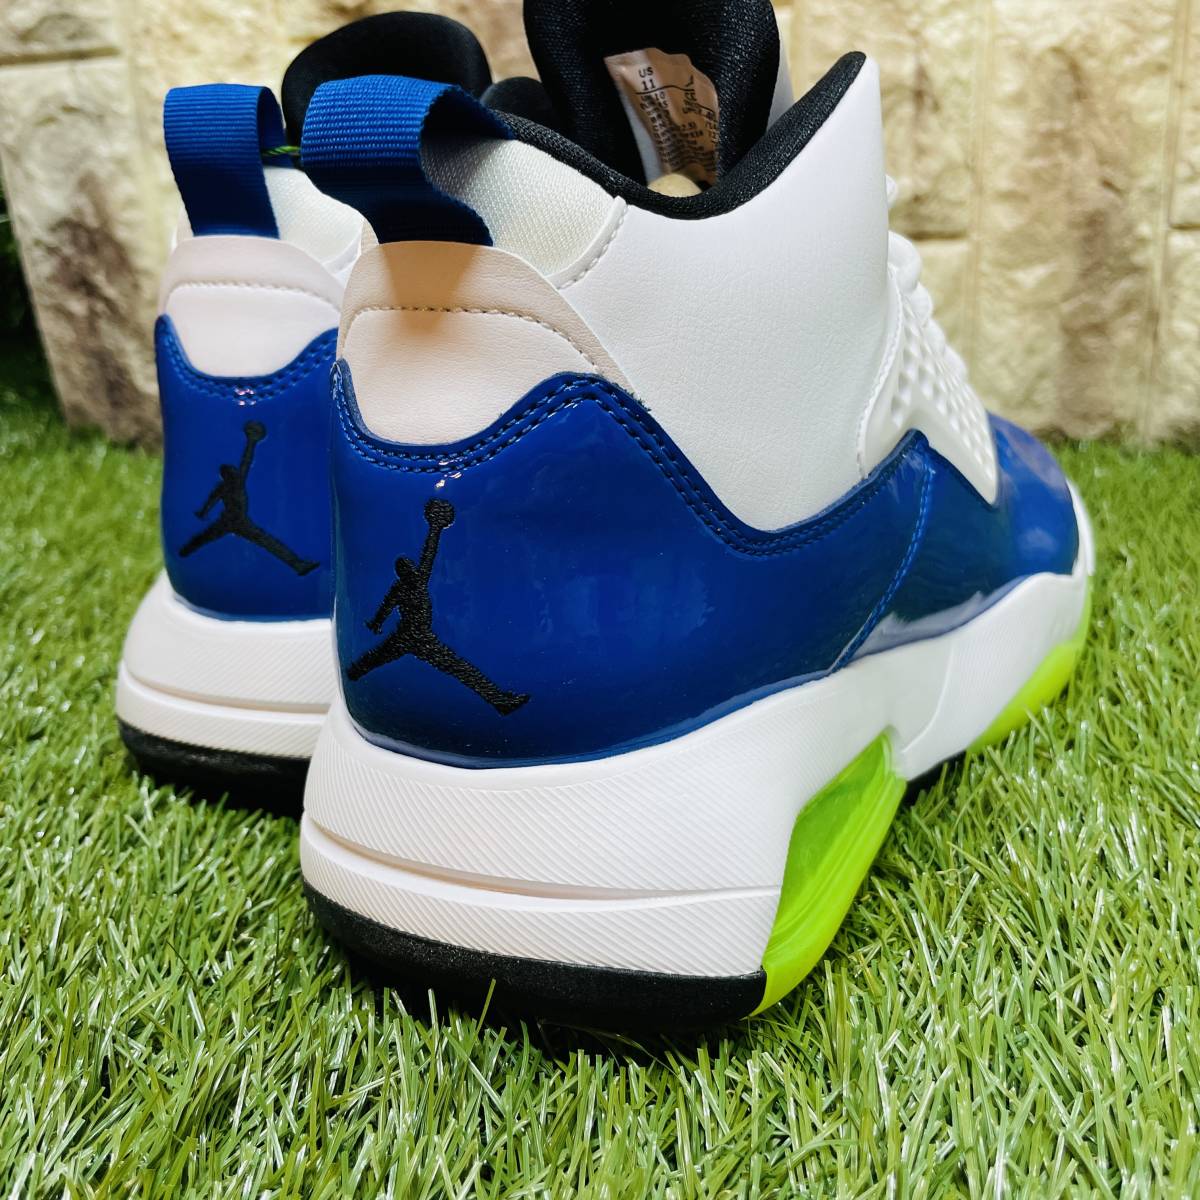 即決 ナイキ ジョーダン マキシン 200 Nike Jordan Maxin 200 メンズ スニーカー 白青黄 29.0cm 送料込み CD6107-400_画像8